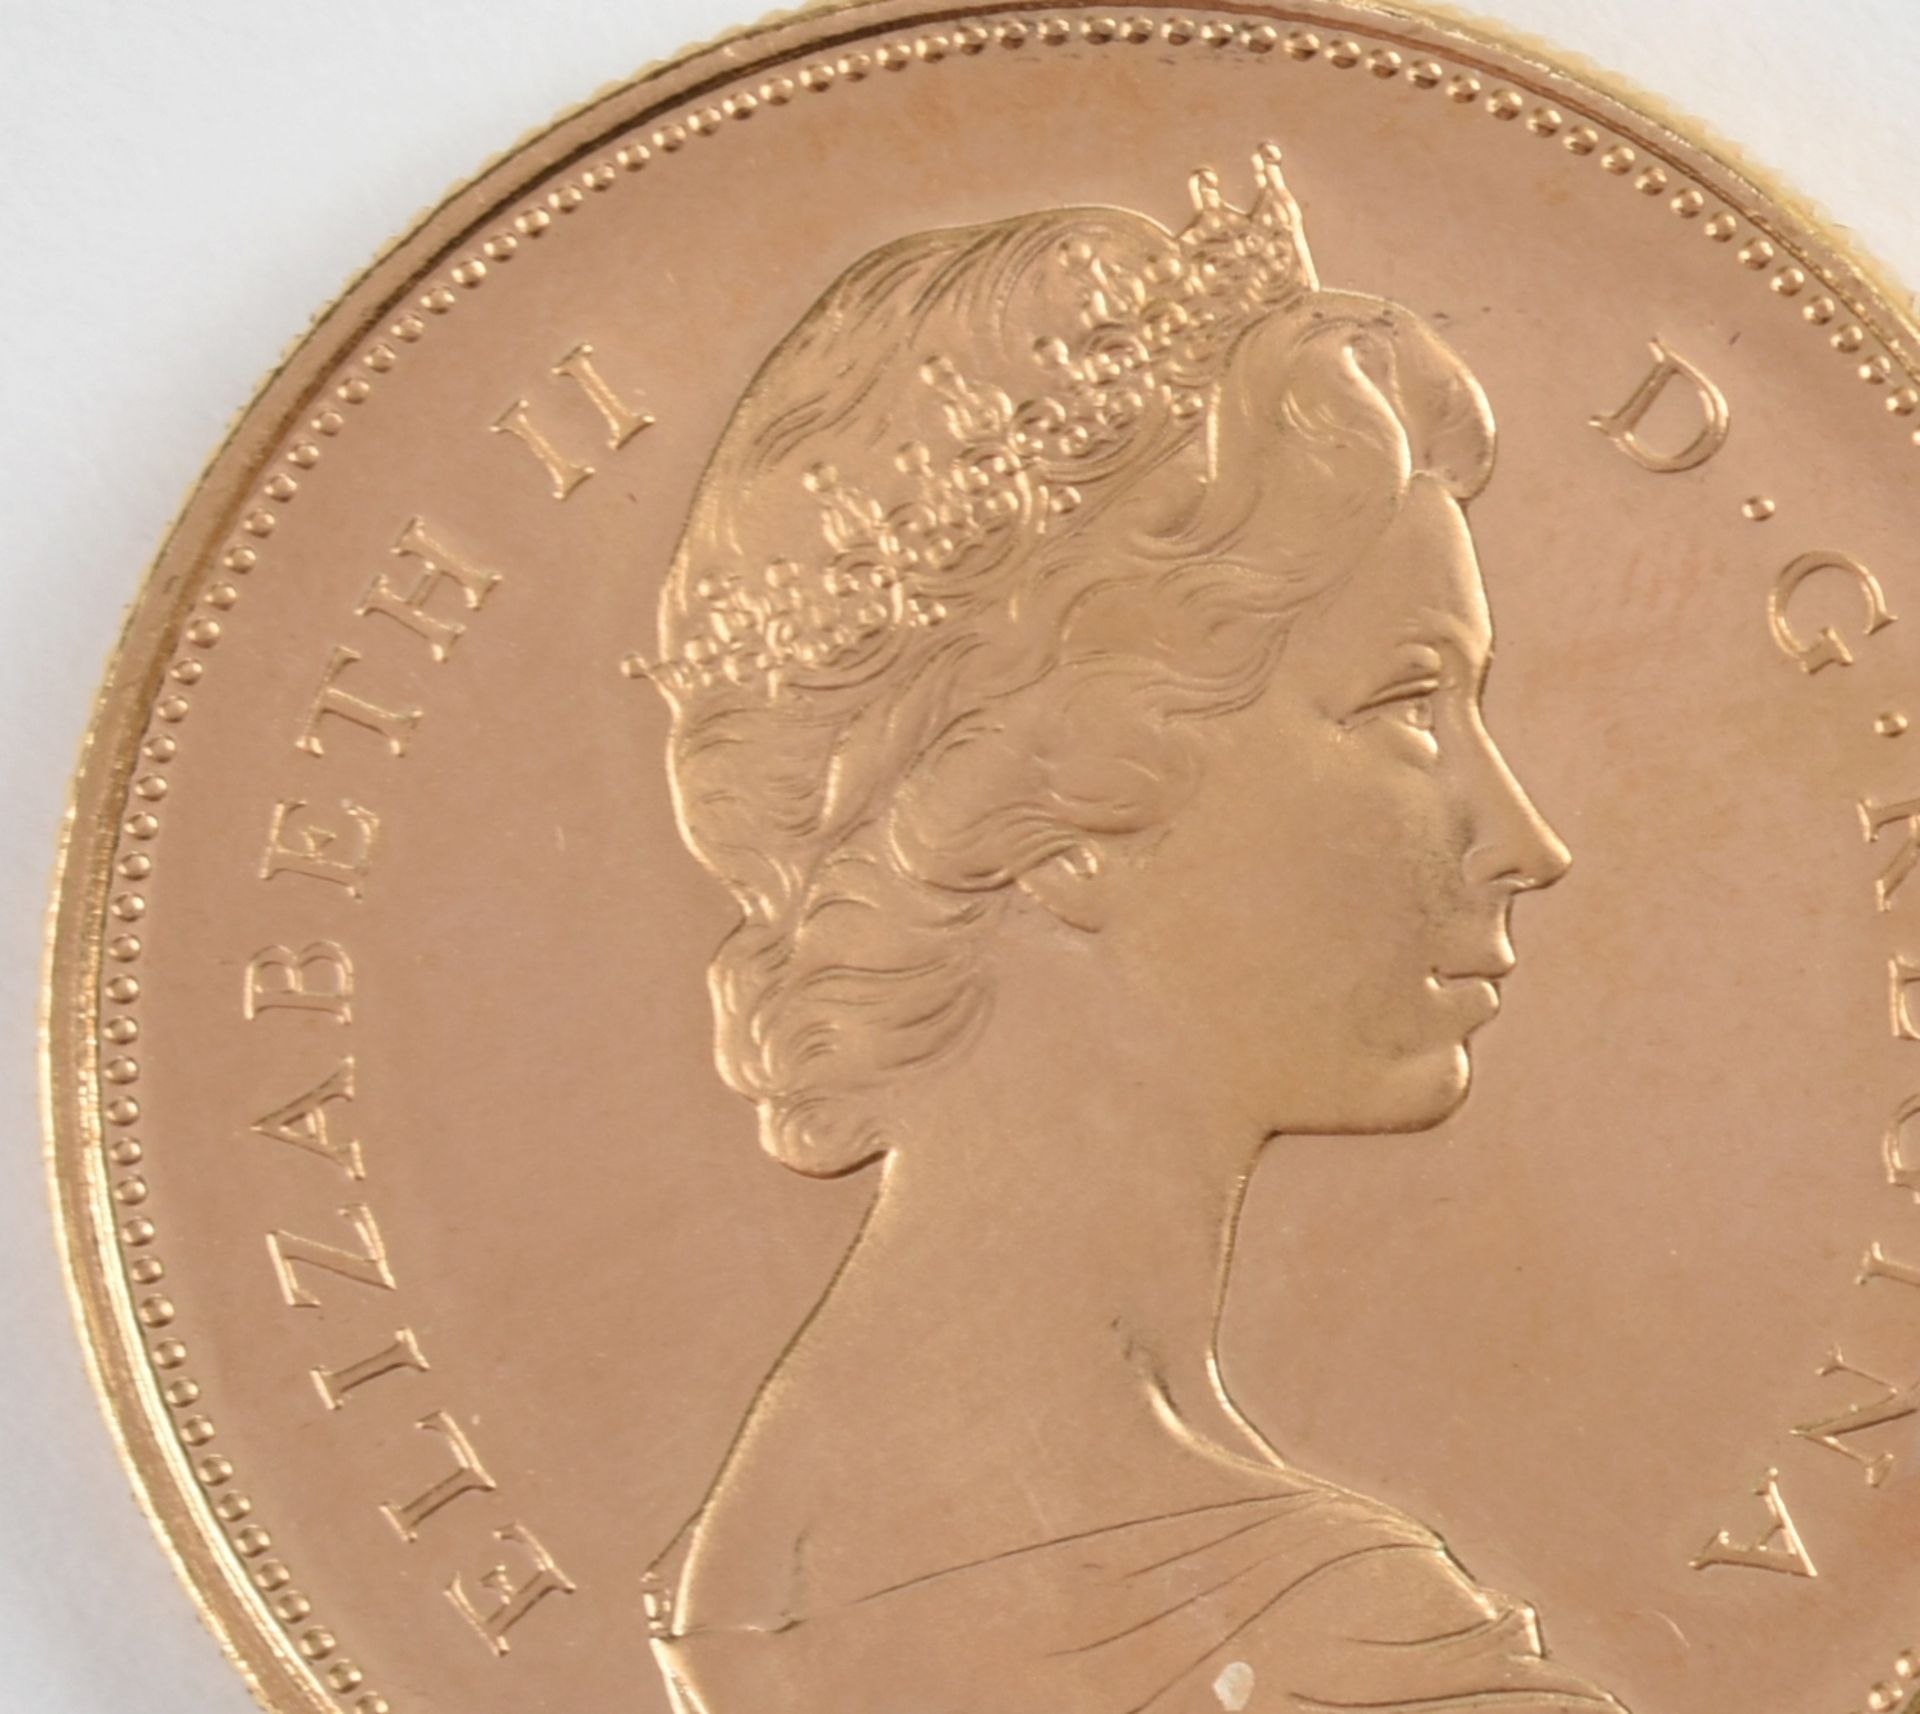 Goldmünze Kanada 1967 20 Dollars in Gold, 900/1000, 18,273 g, av. Königin Elisabeth II. Büste rechts